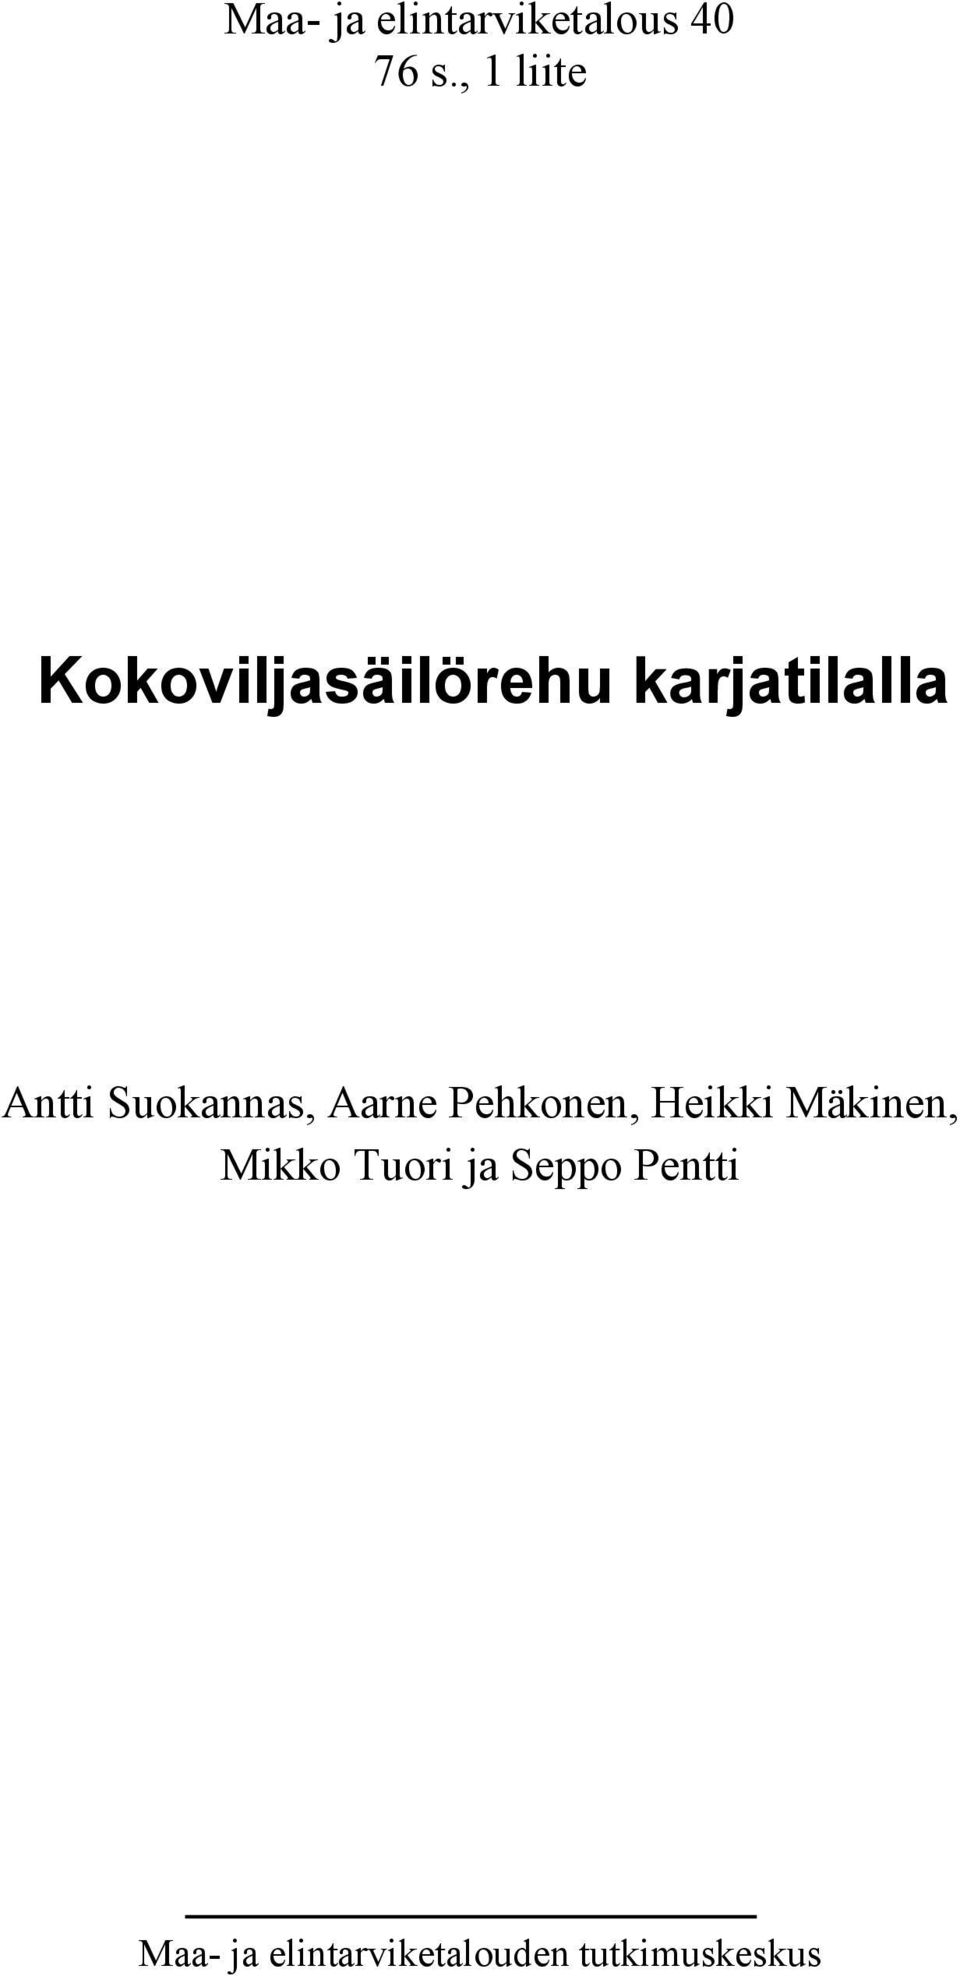 Suokannas, Aarne Pehkonen, Heikki Mäkinen, Mikko